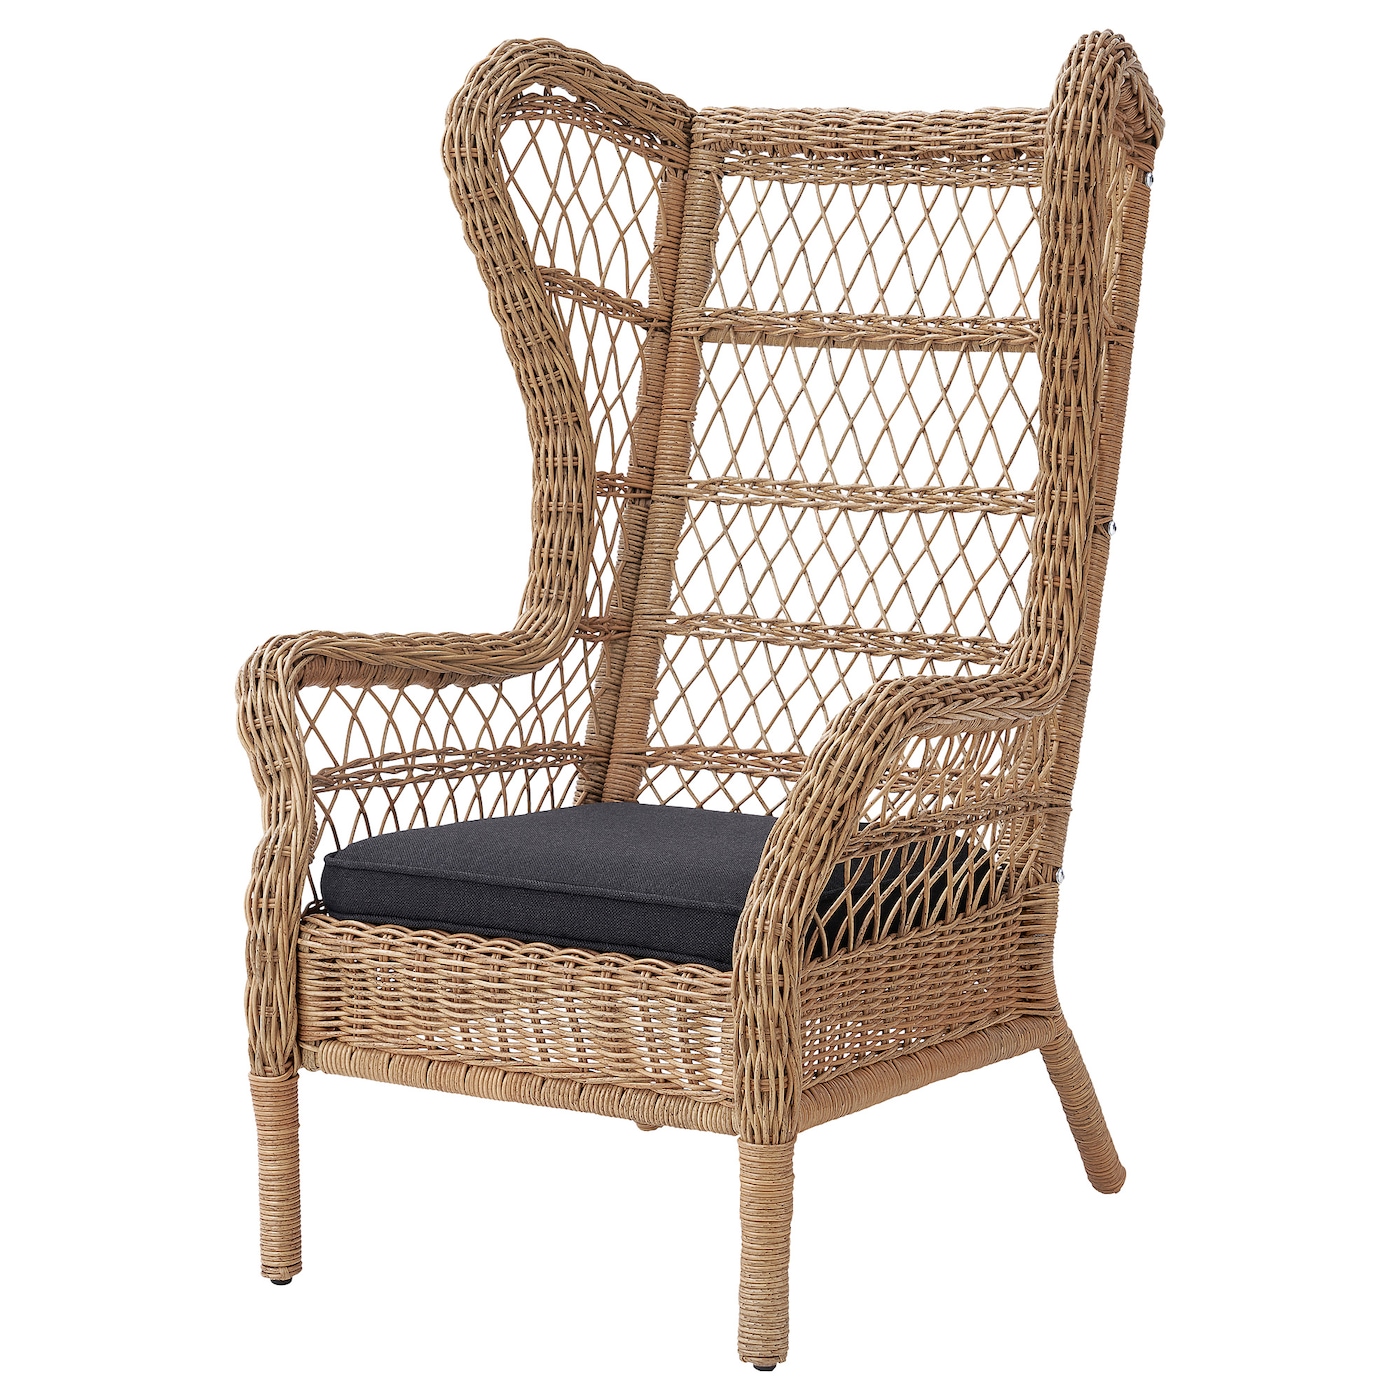 РИСХОЛЬМЕН Кресло, для внутреннего и наружного применения, Ярпён/ДУвхольмен антрацит RISHOLMEN IKEA